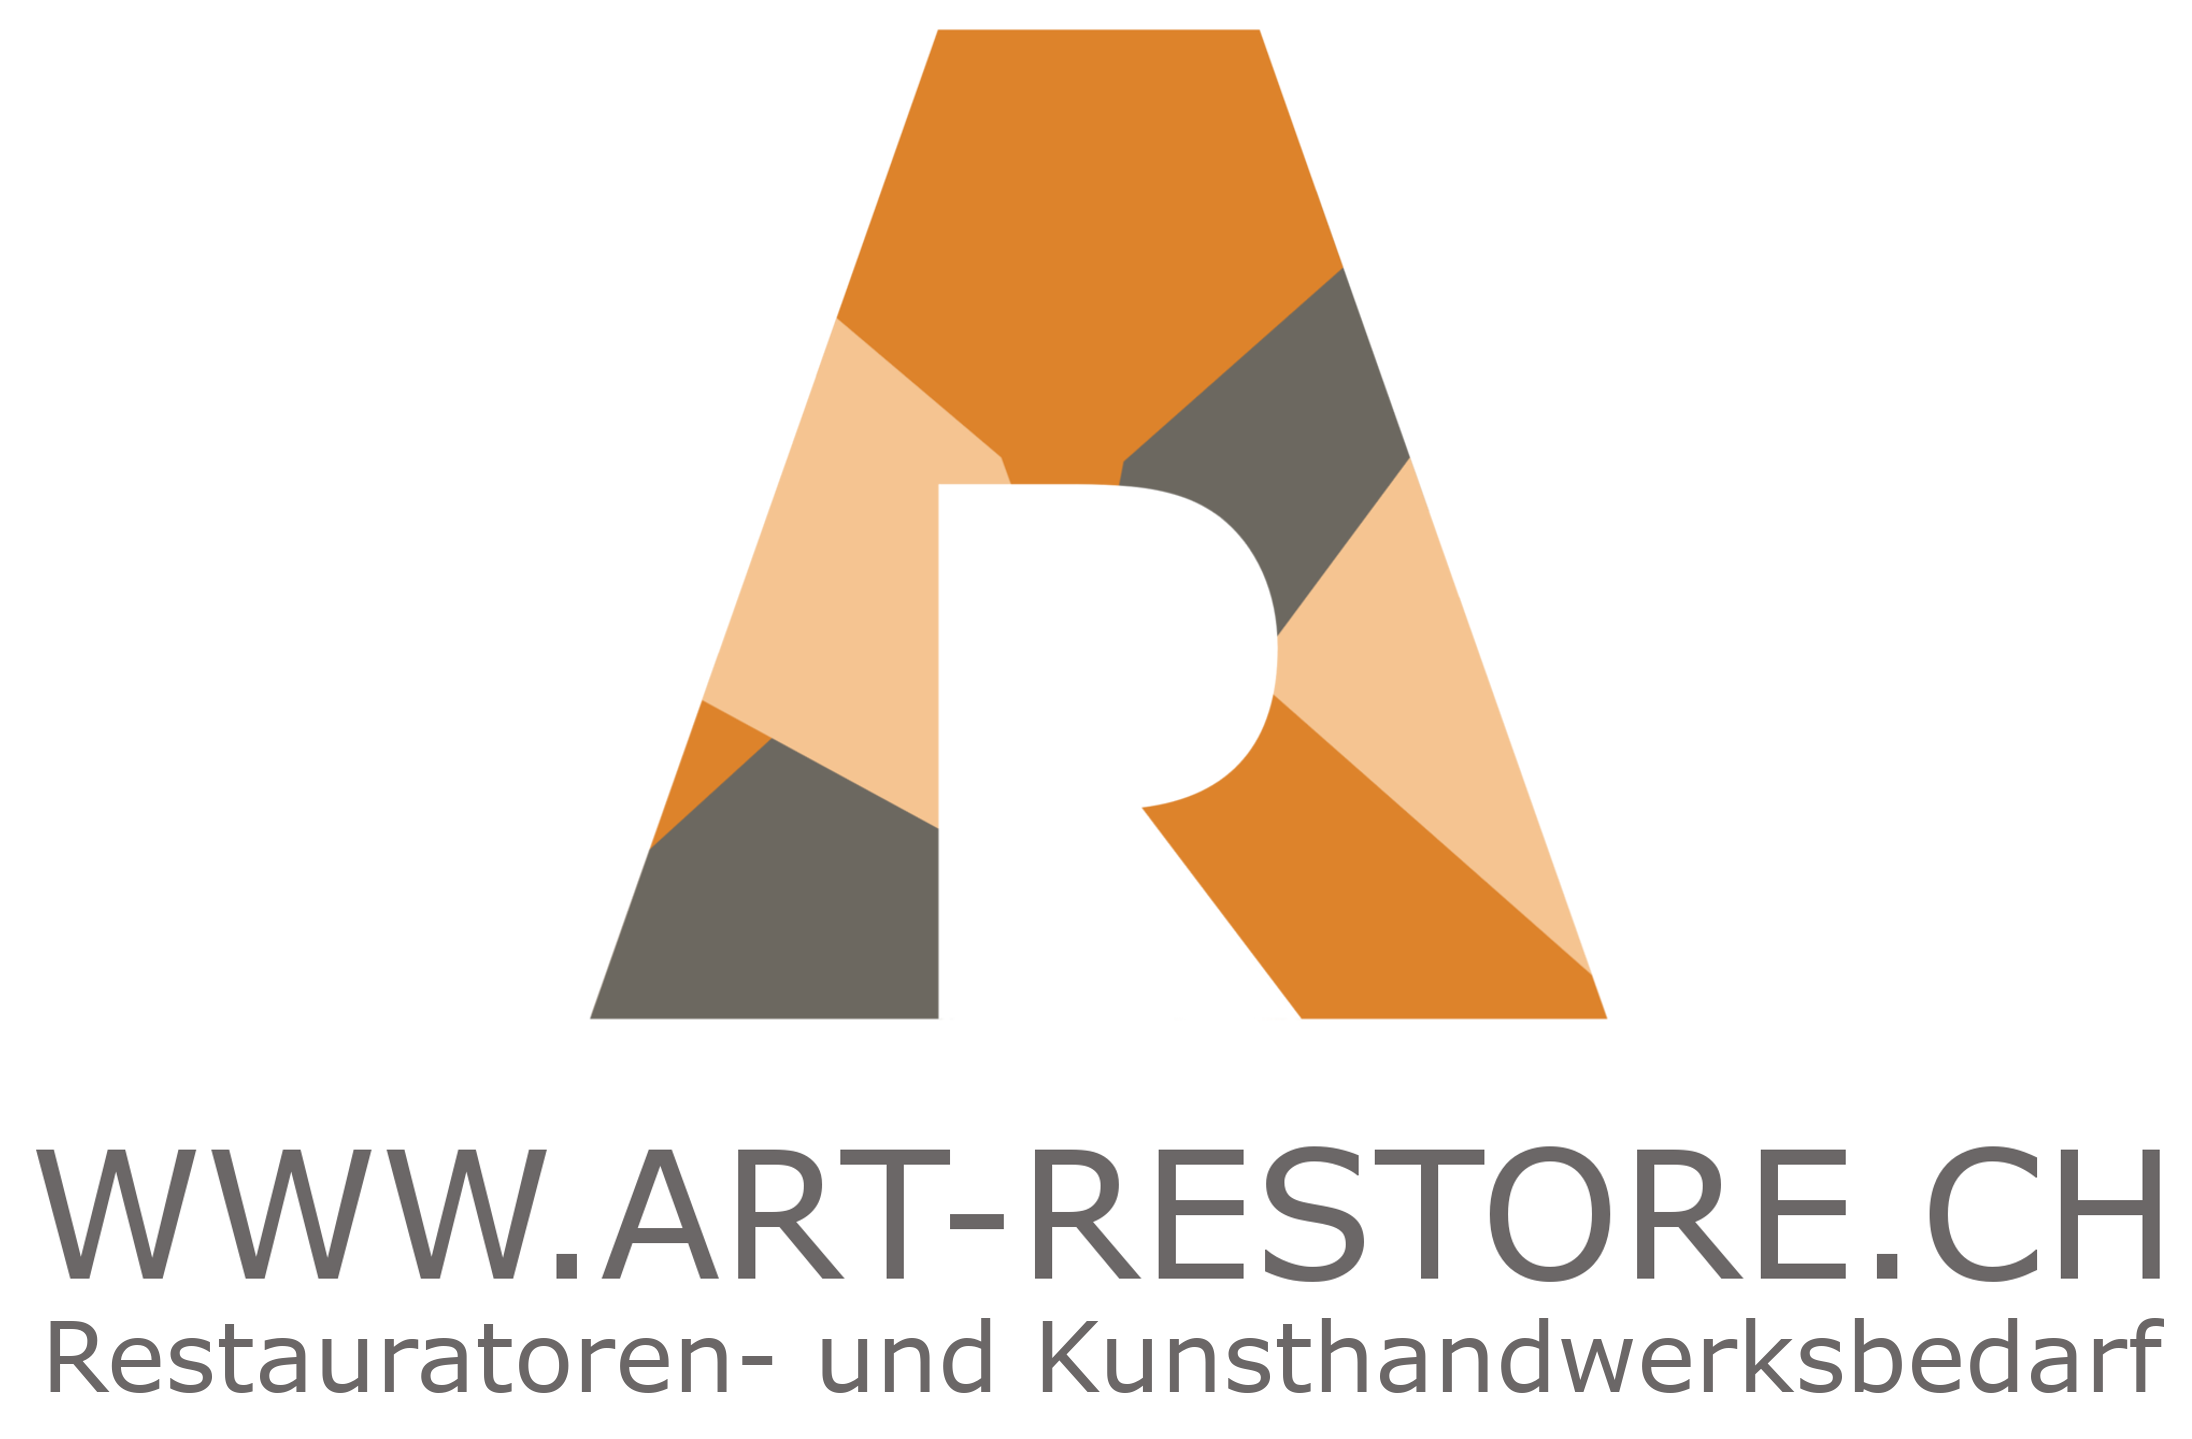 www.art-restore.ch